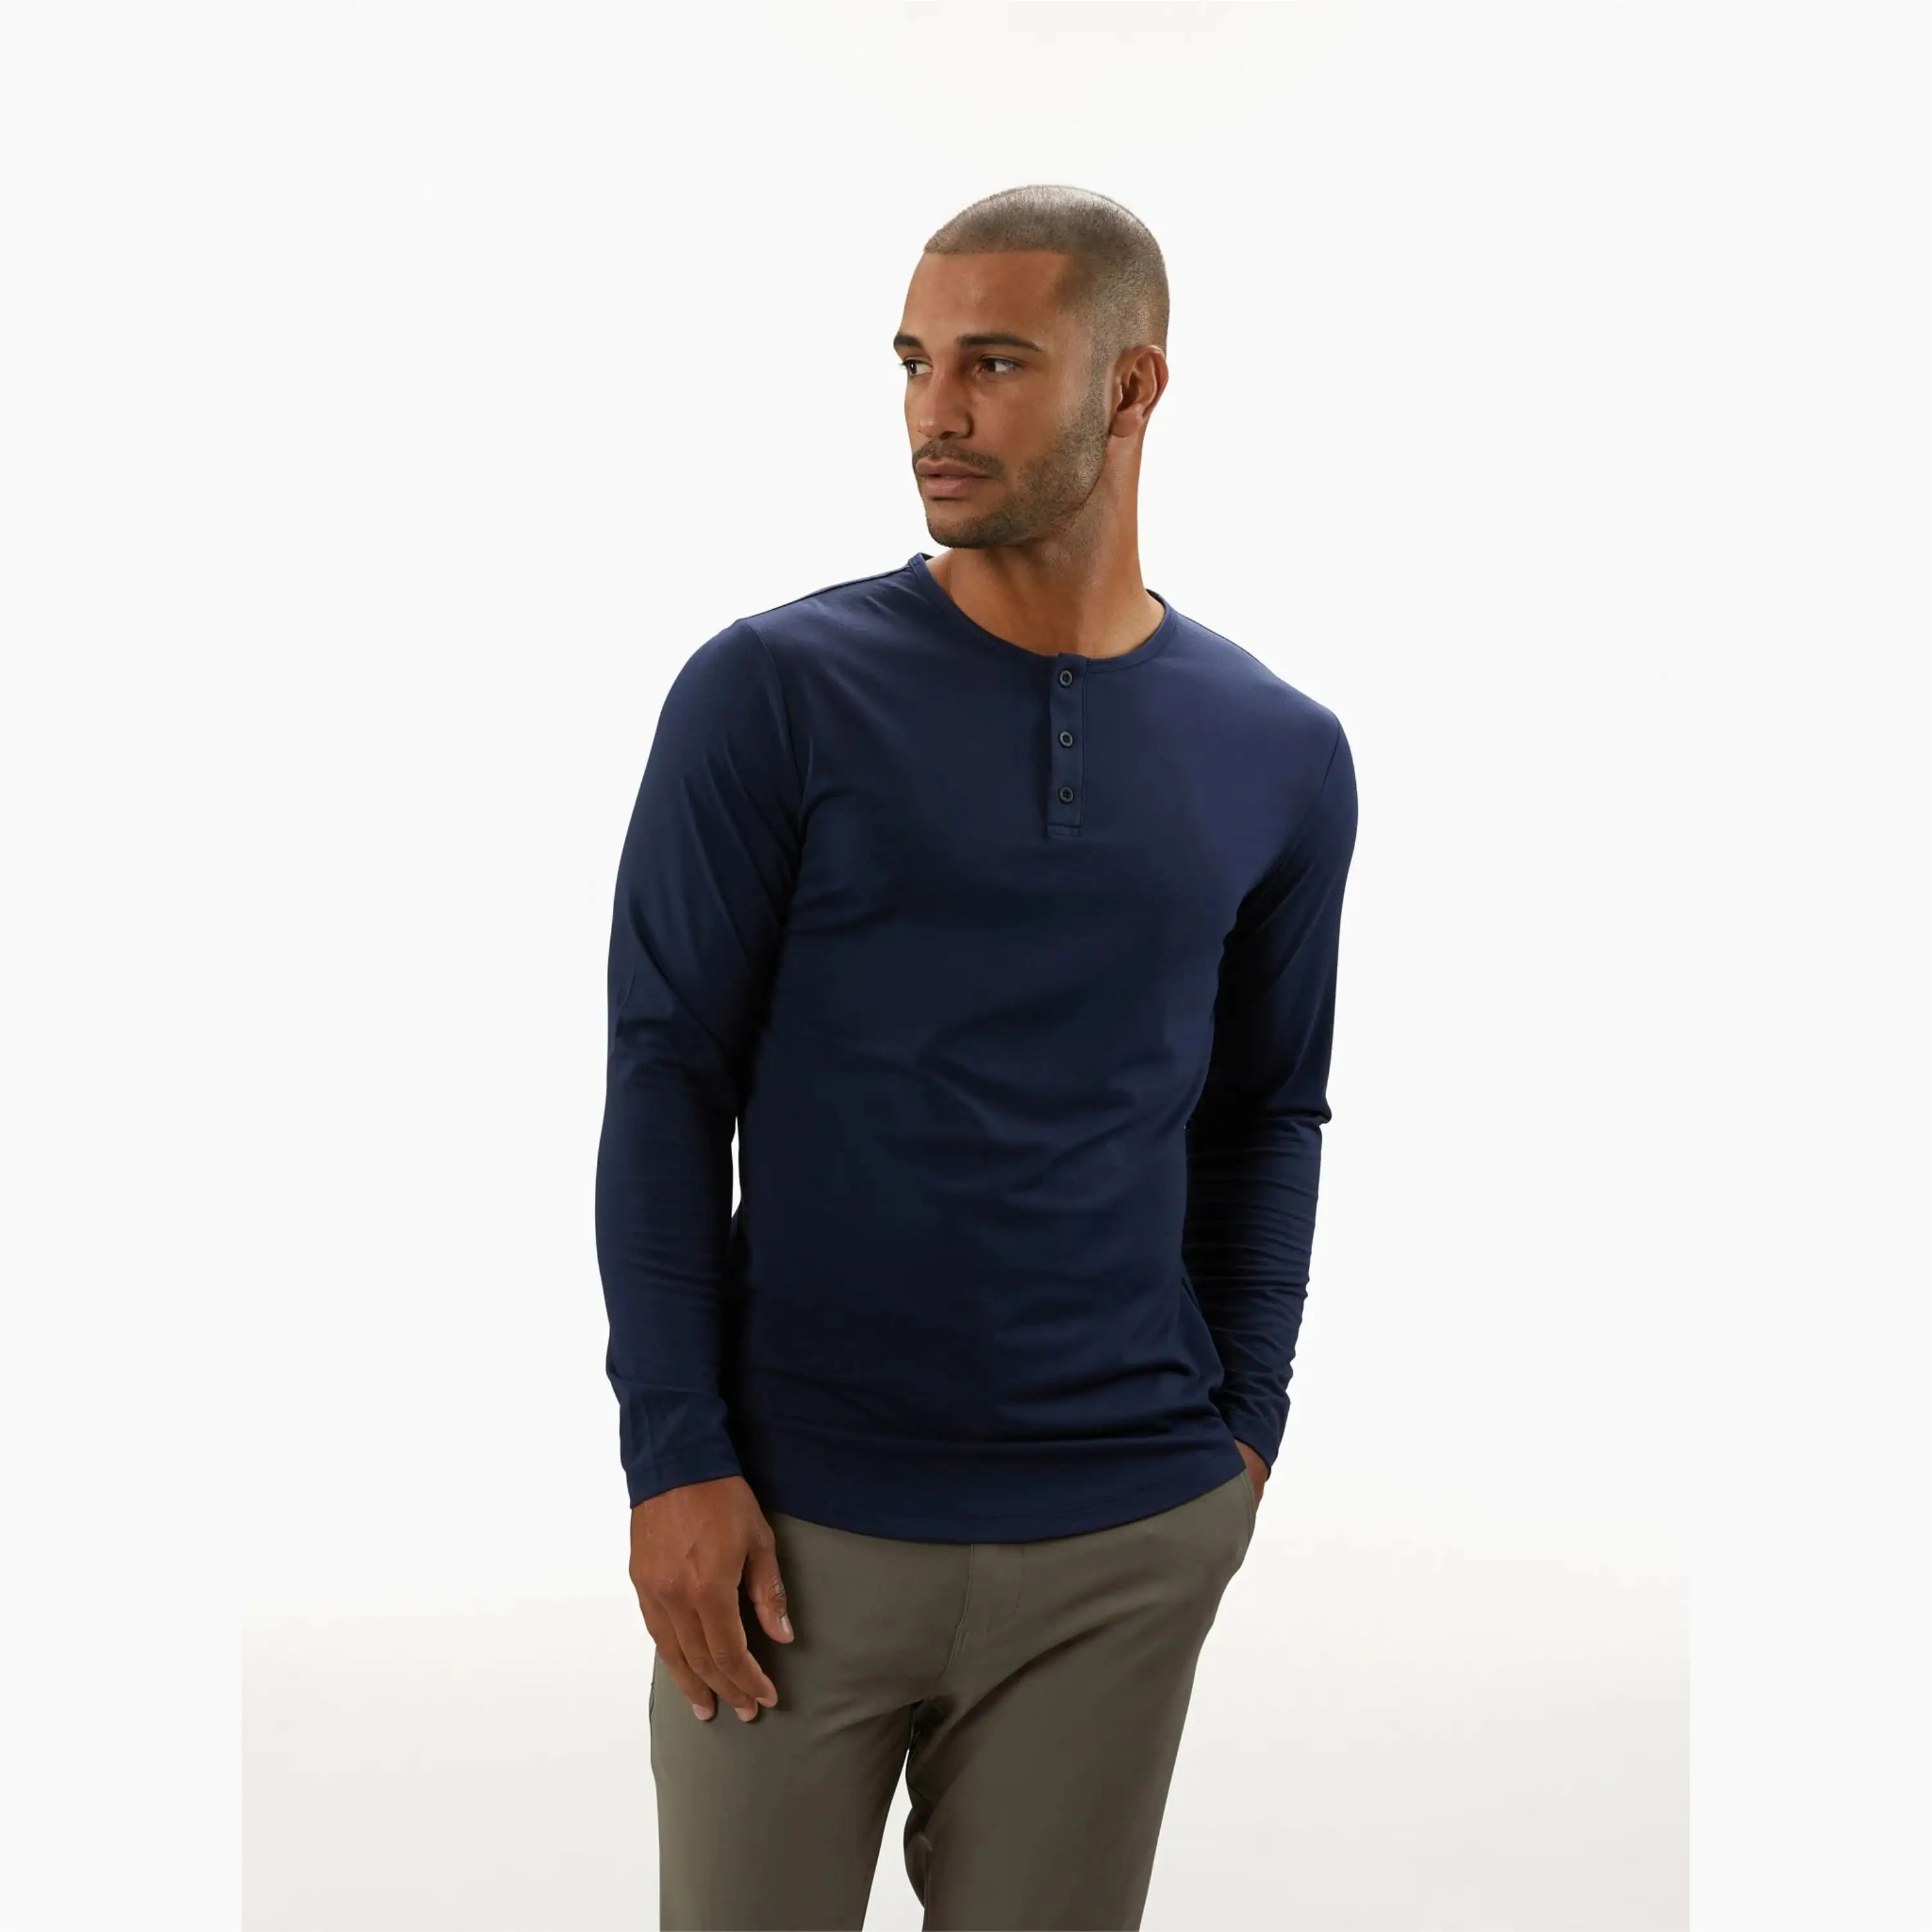 Camisa macia de henley para costura, logotipo personalizado 62% poliéster 33% algodão 5% spandex assinatura cabe mangas compridas bainha curva camisa azul